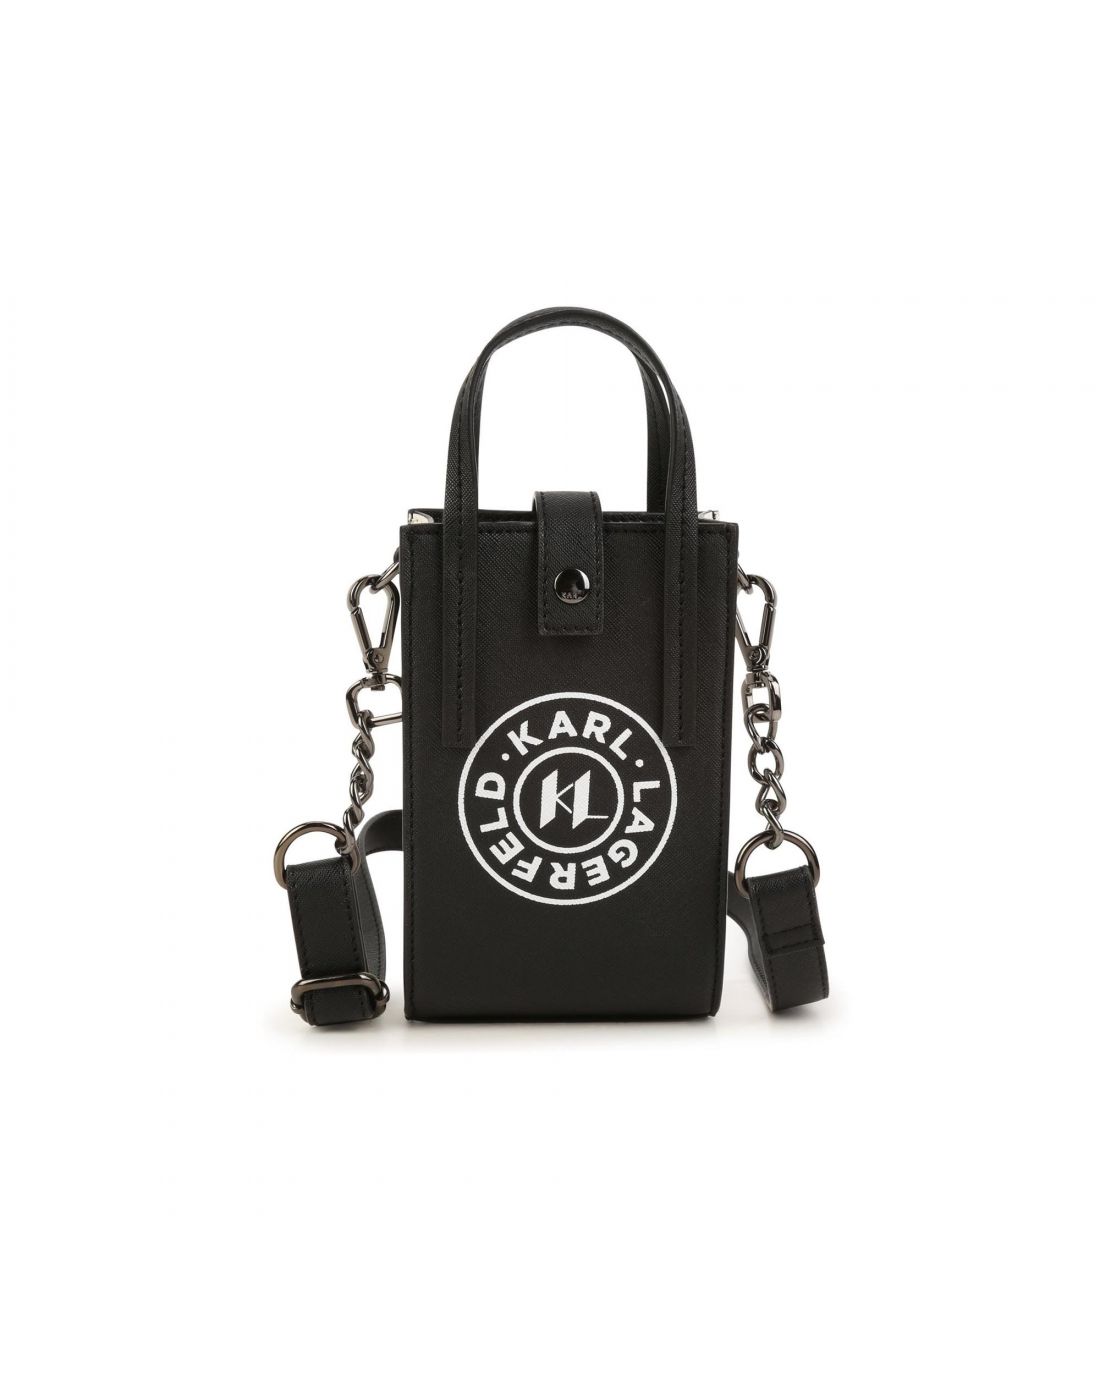 Buy Karl Lagerfeld Bag Oberer Handgriff Bag Cream With Og Box 901 (J1295)